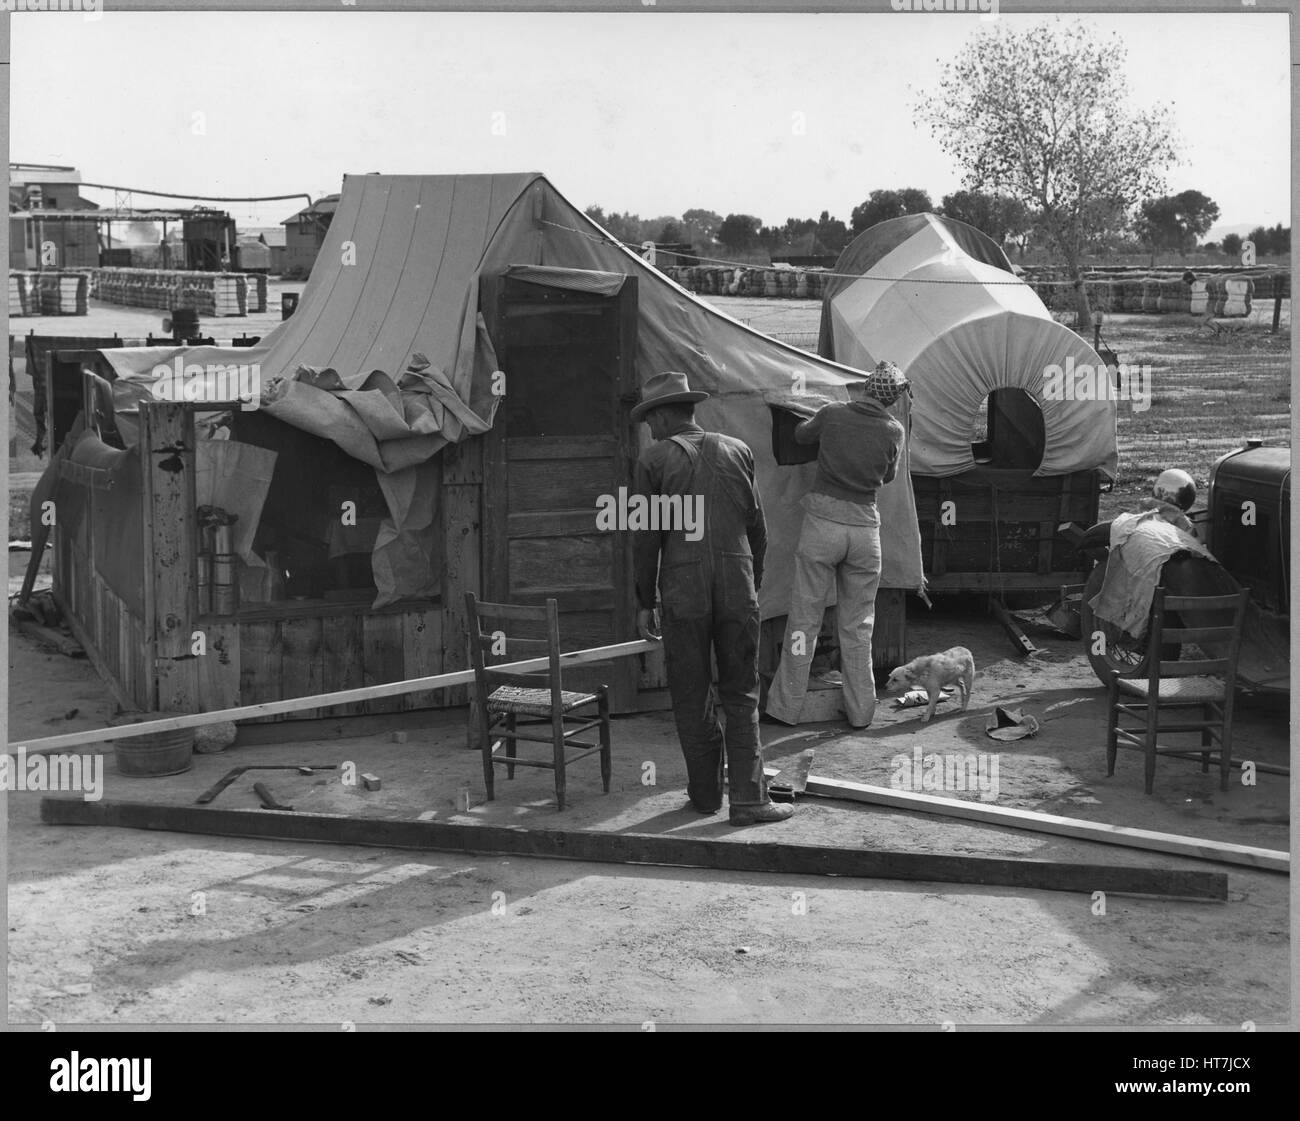 Fotografia di raccoglitrici di cotone lavorando per migliorare il loro alloggiamento, Chandler, Arizona, novembre 1940. Immagine cortesia Dorothea Lange/US National Archives. Foto Stock